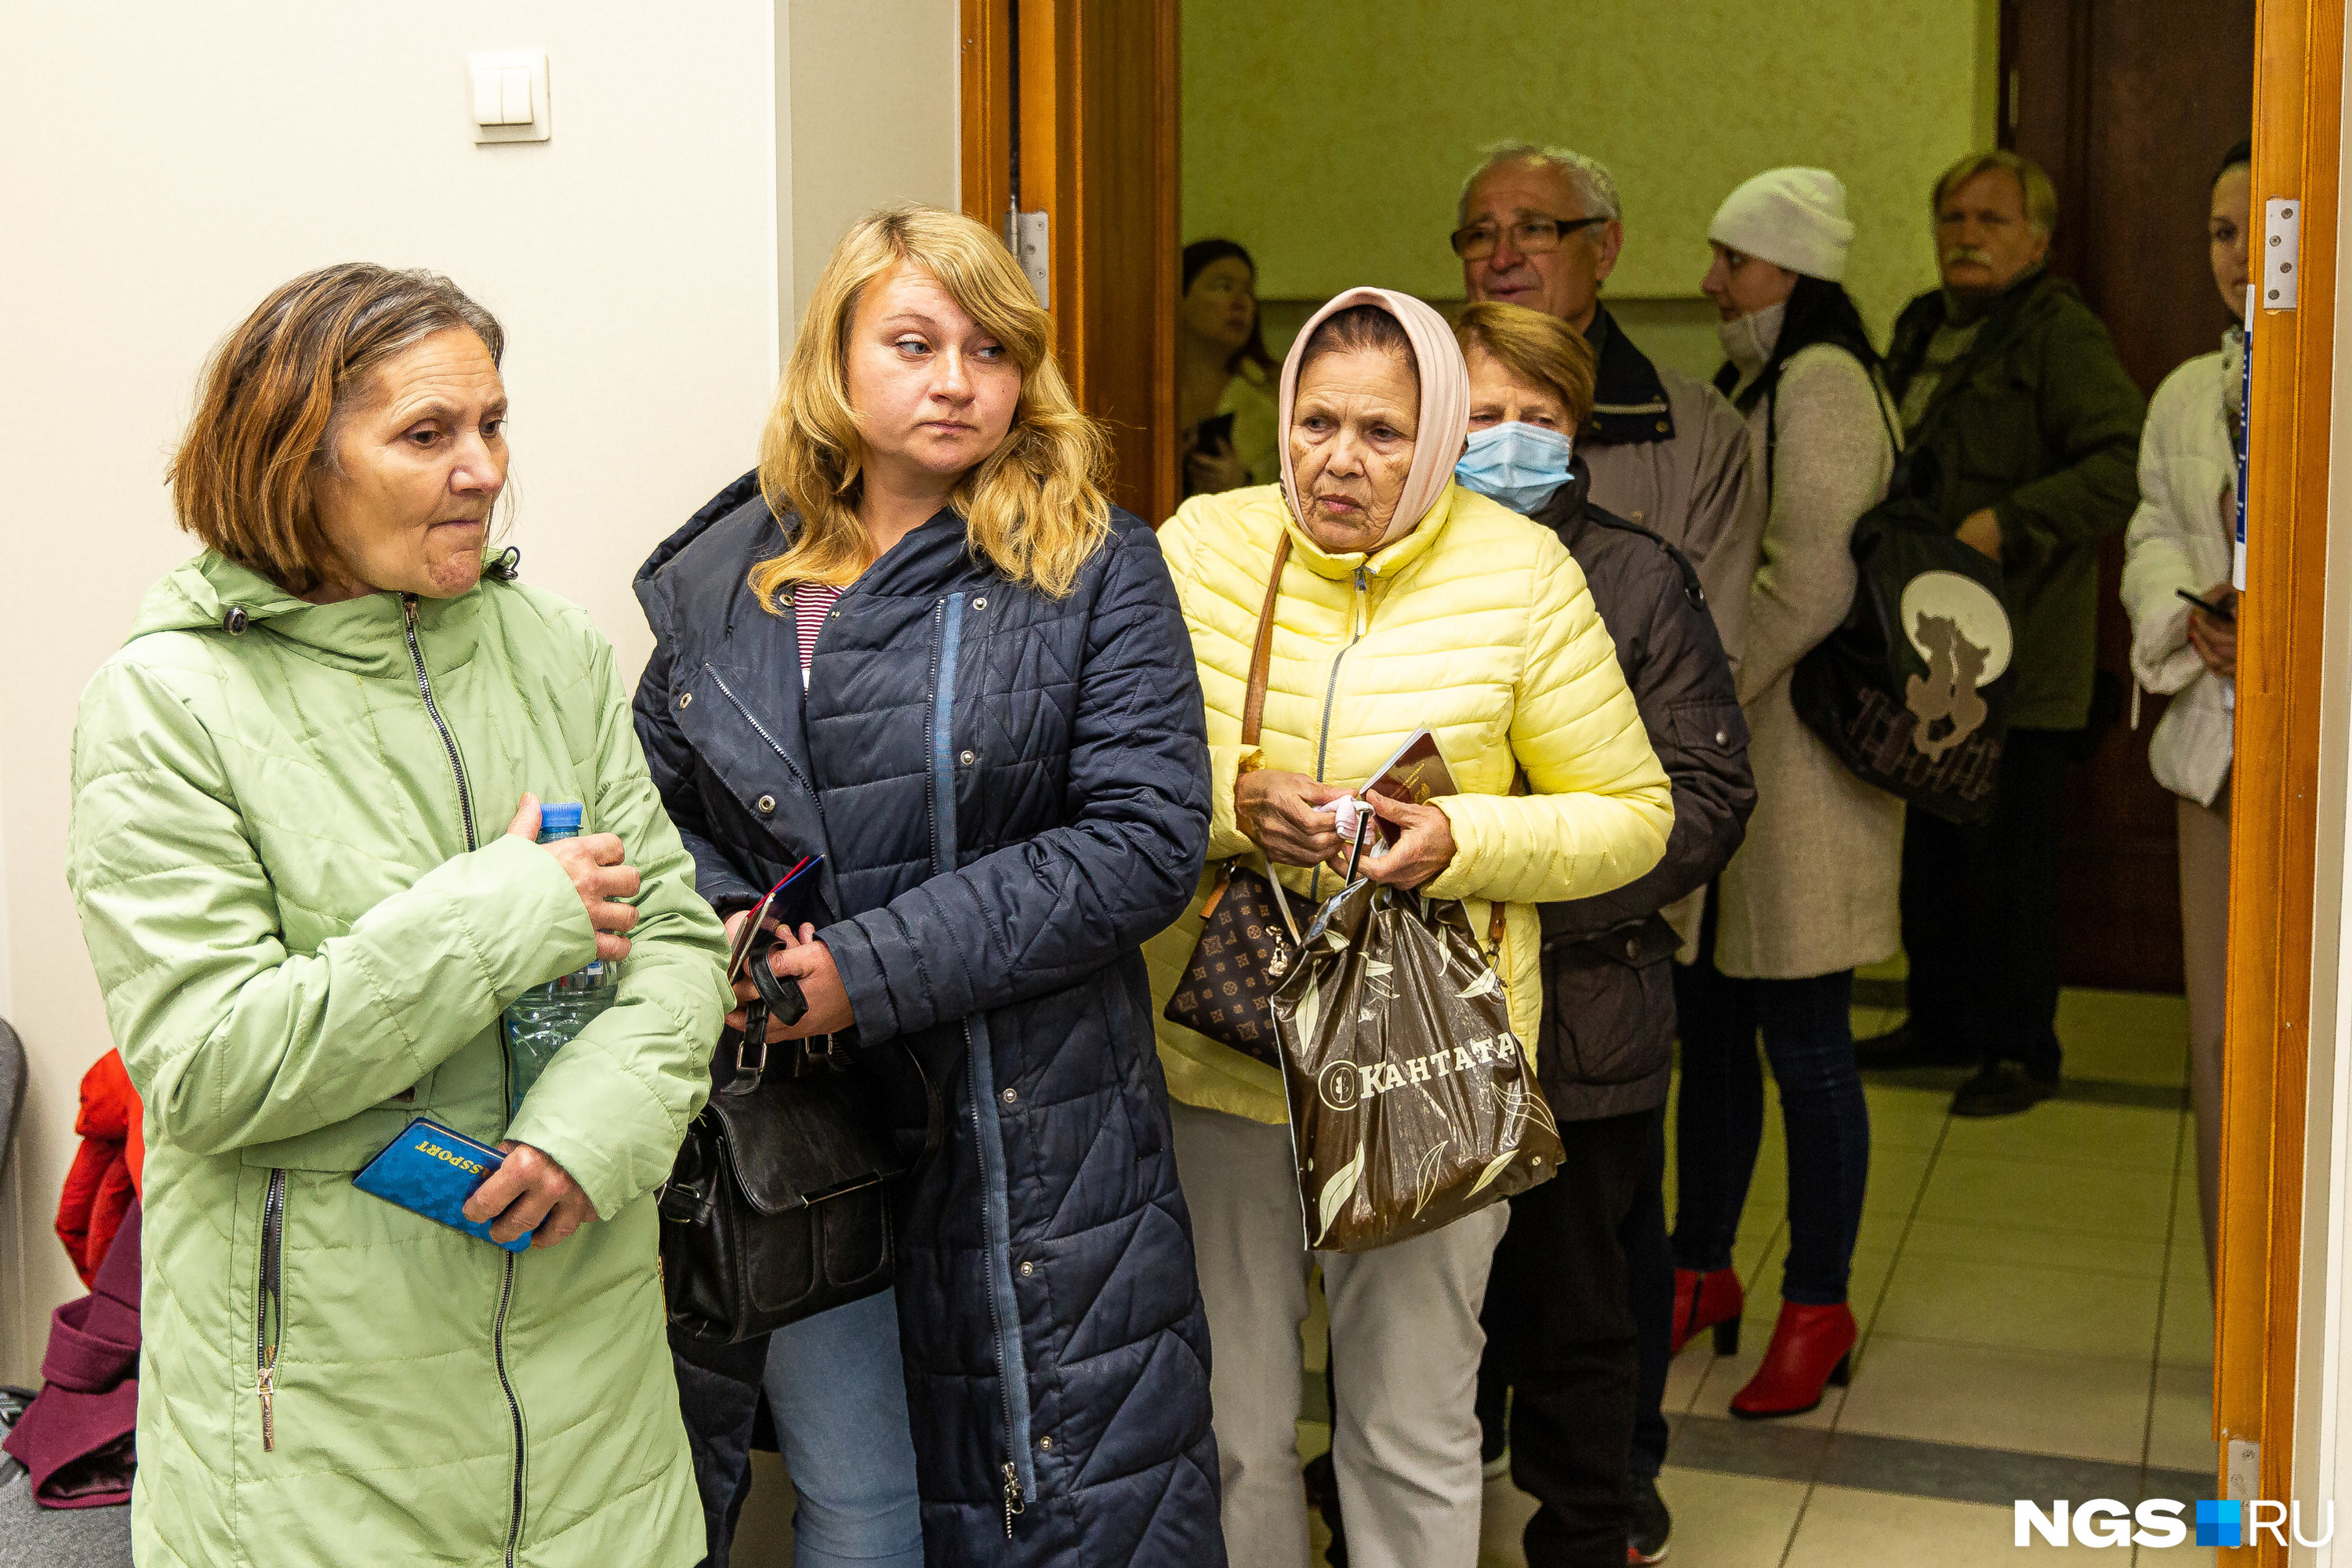 Периодически в дверях участка образовывалась настоящая очередь: проголосовать можно было только в Новосибирске, из ближайших районов людей подвозили автобусами